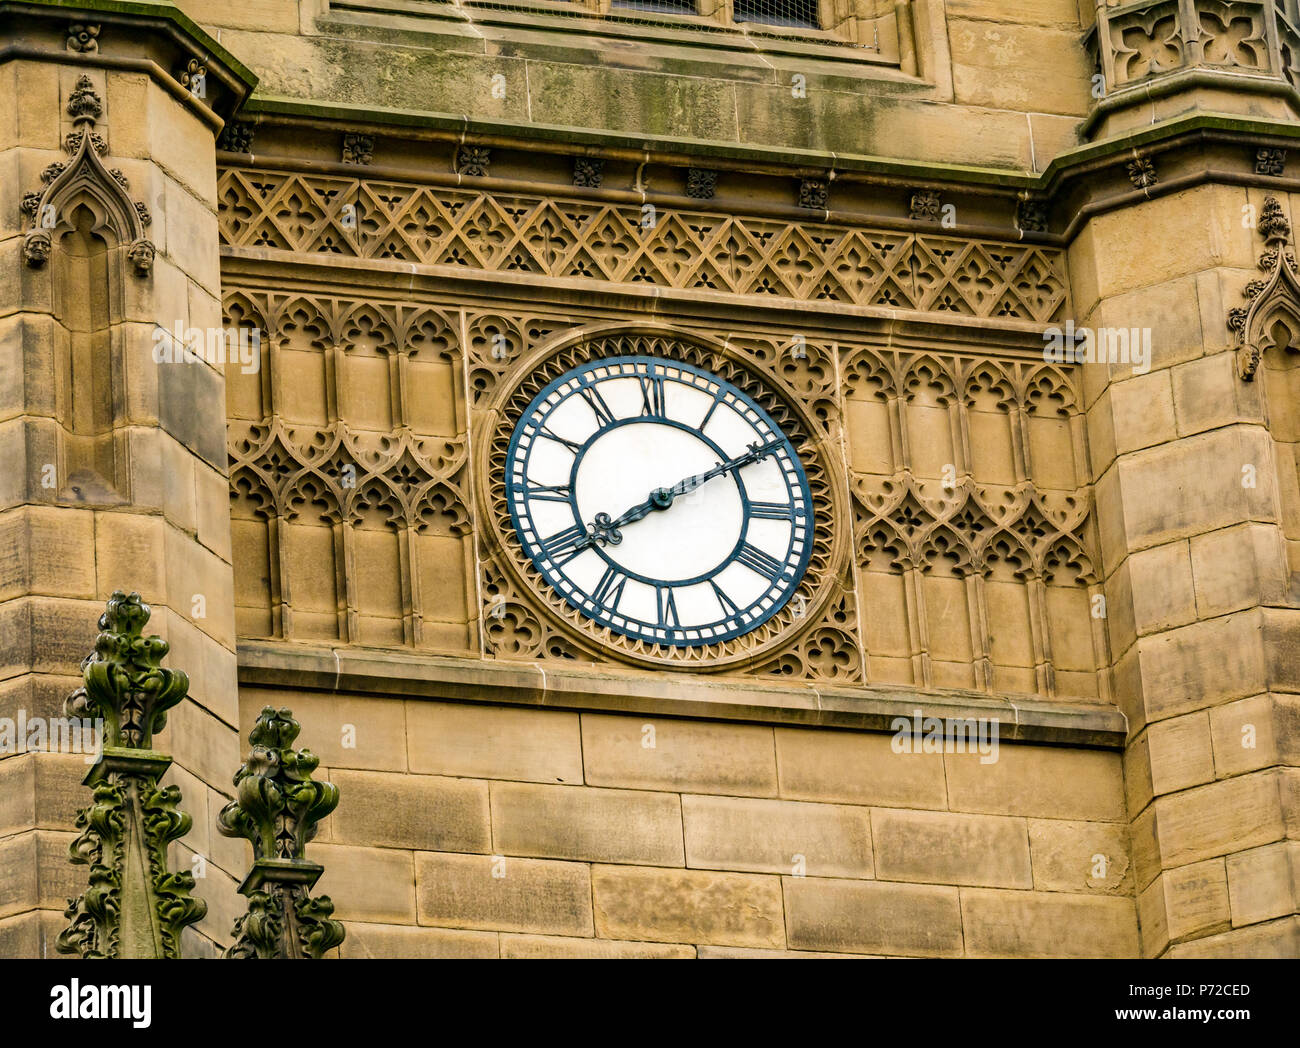 Vue rapprochée de la tour d'horloge de l'église De St Luke, Liverpool, Angleterre, Royaume-Uni, endommagée par une bombe dans la seconde Guerre mondiale, maintenant une ruine Banque D'Images